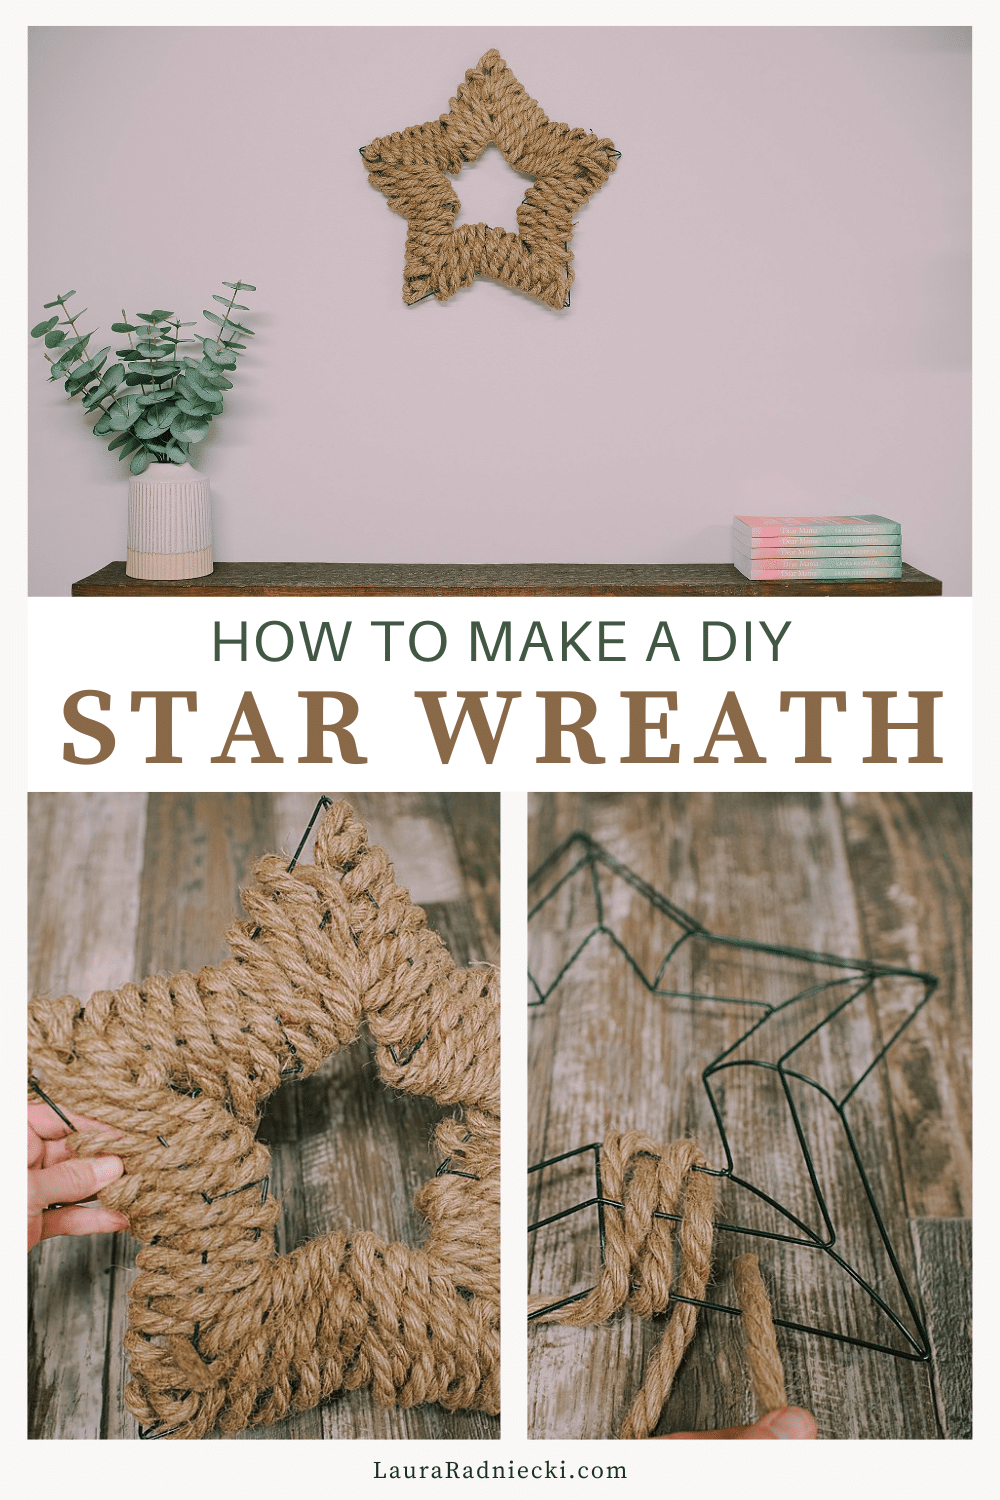 How to Make a Star Wreath | DIY Jute Star Wreath